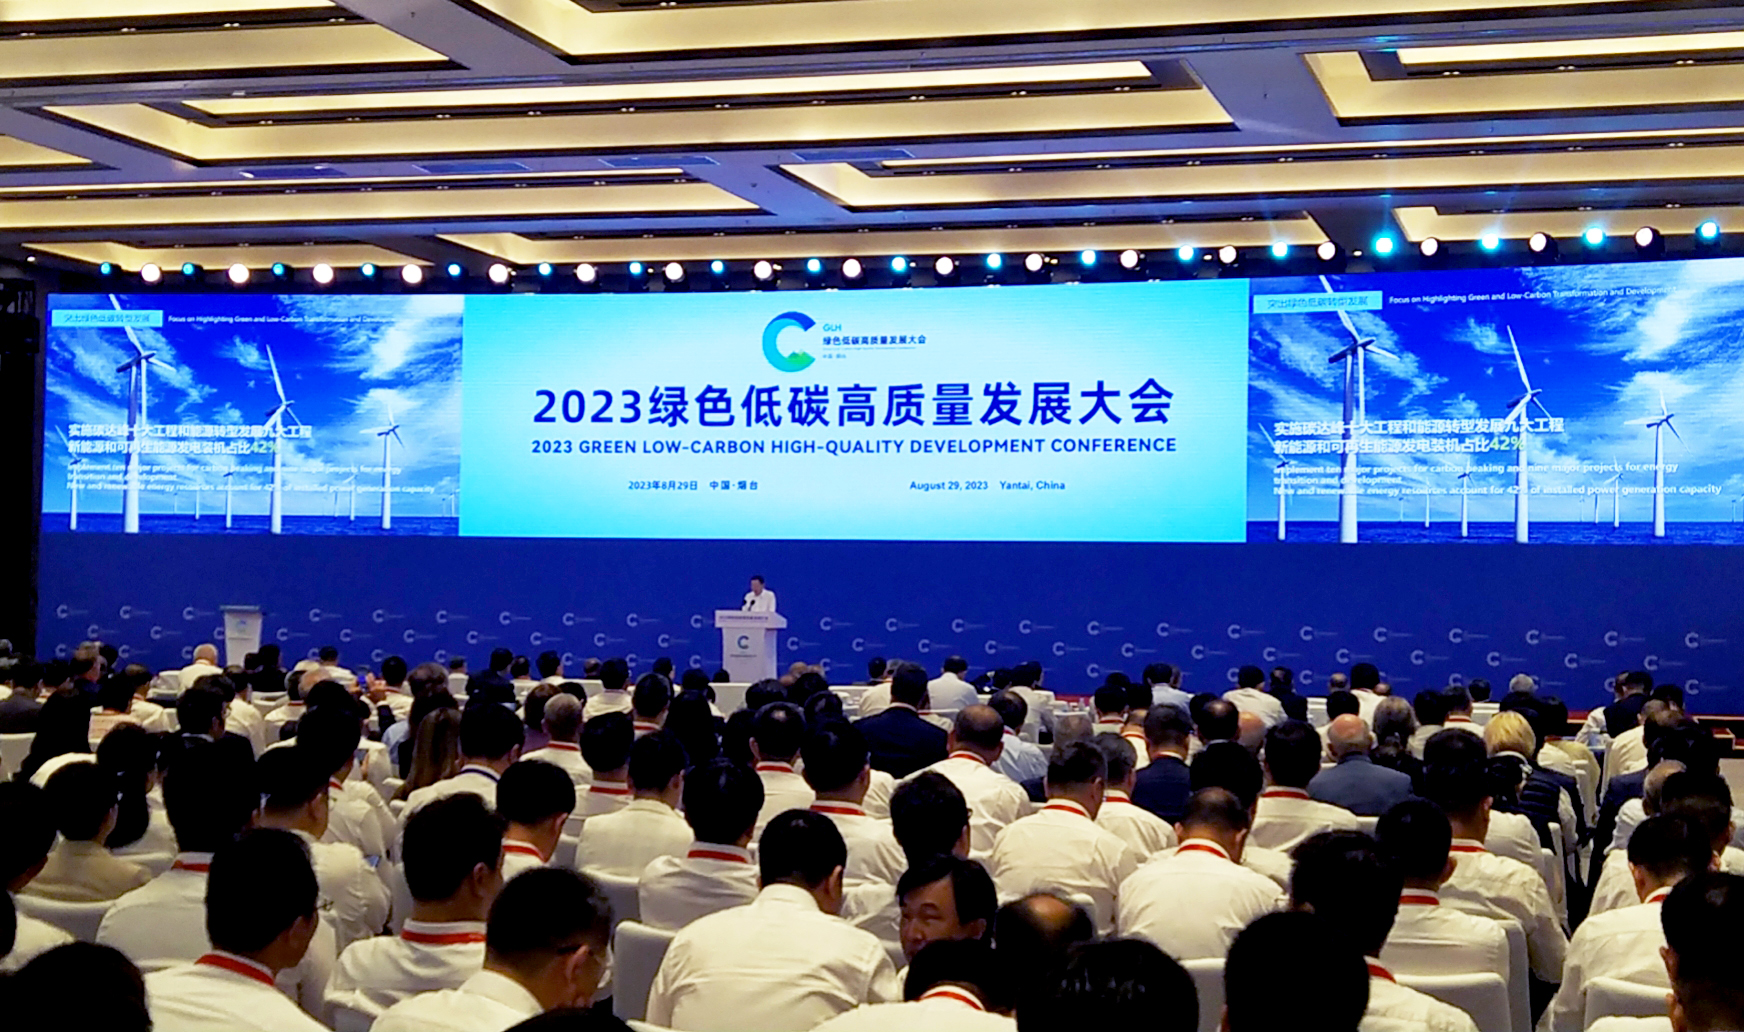 การประชุมการพัฒนาสีเขียว คาร์บอนต่ํา คุณภาพสูง ปี 2023 จัดขึ้นที่ Yantai, Shandong